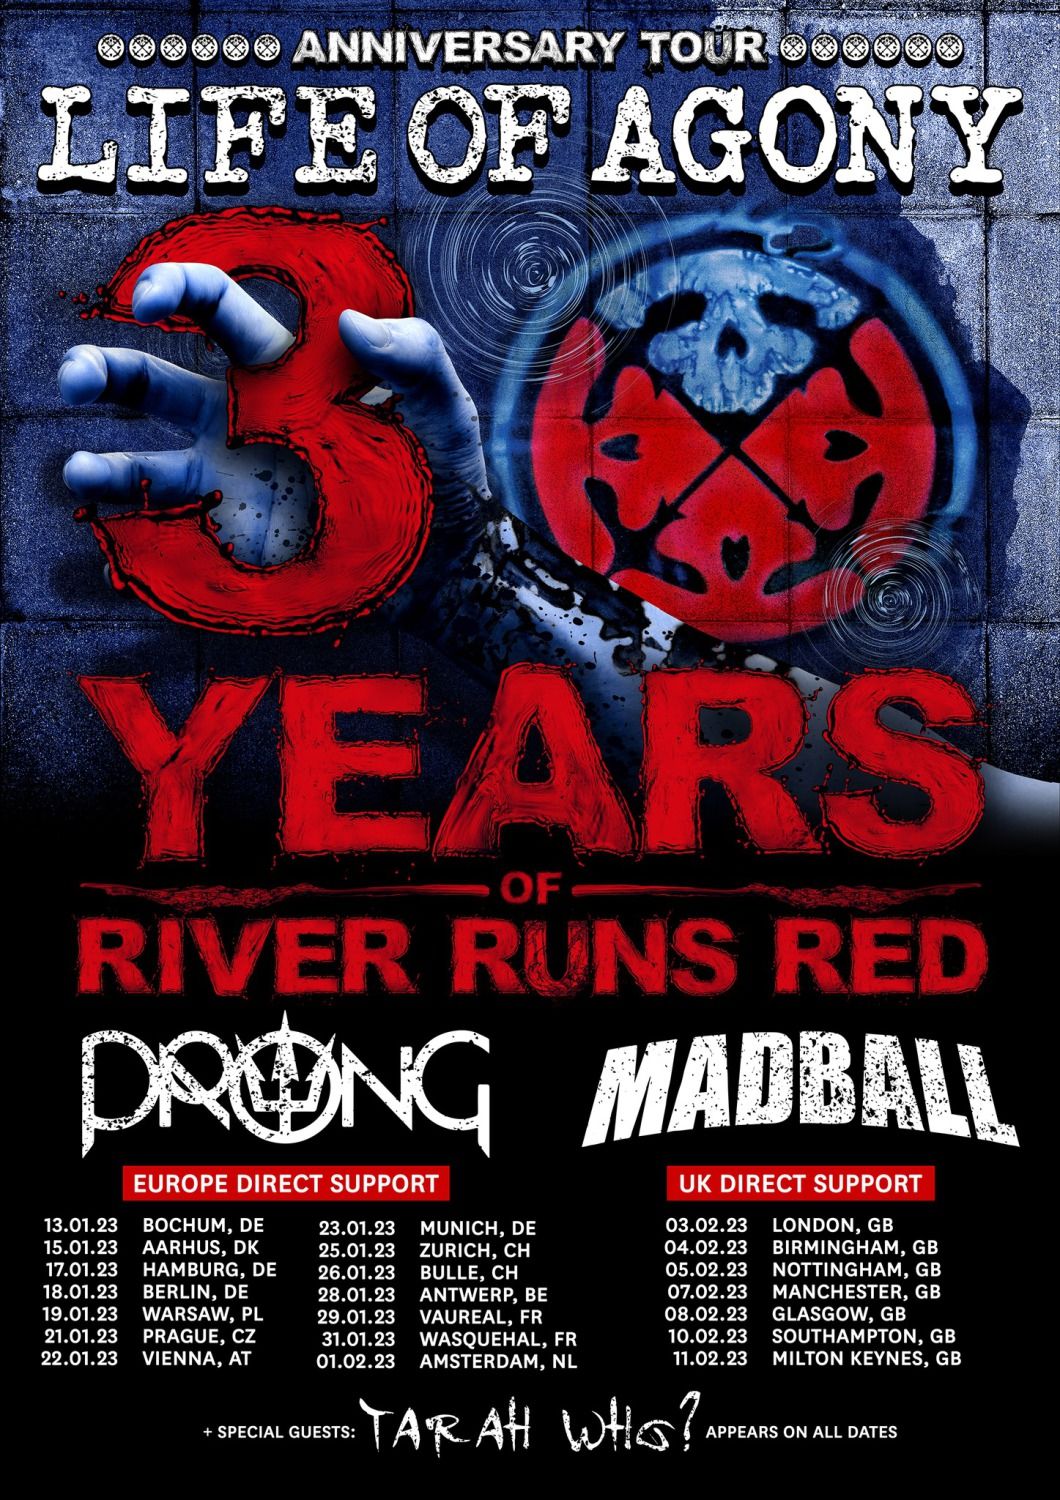 "30 Years Of River Runs Red"-Tourtrailer veröffentlicht